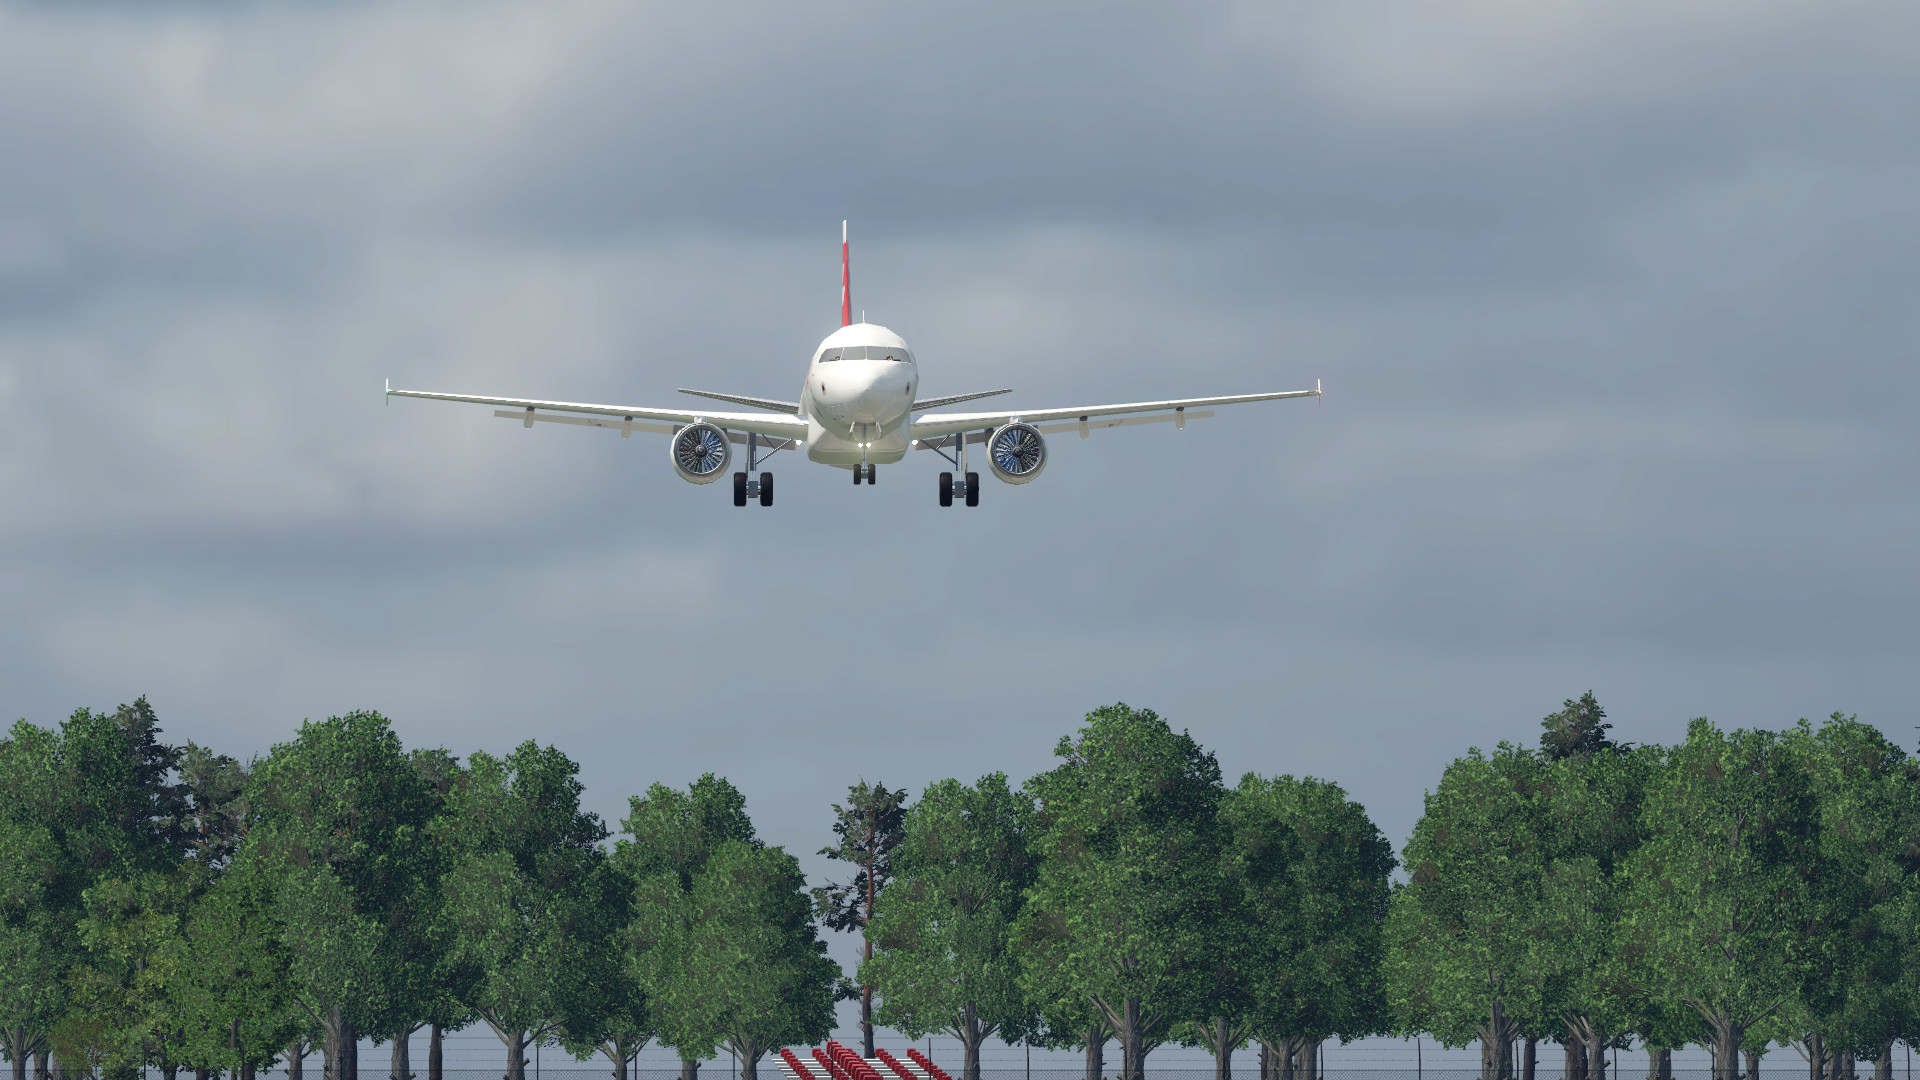 LX435 aus ZRH on final approach